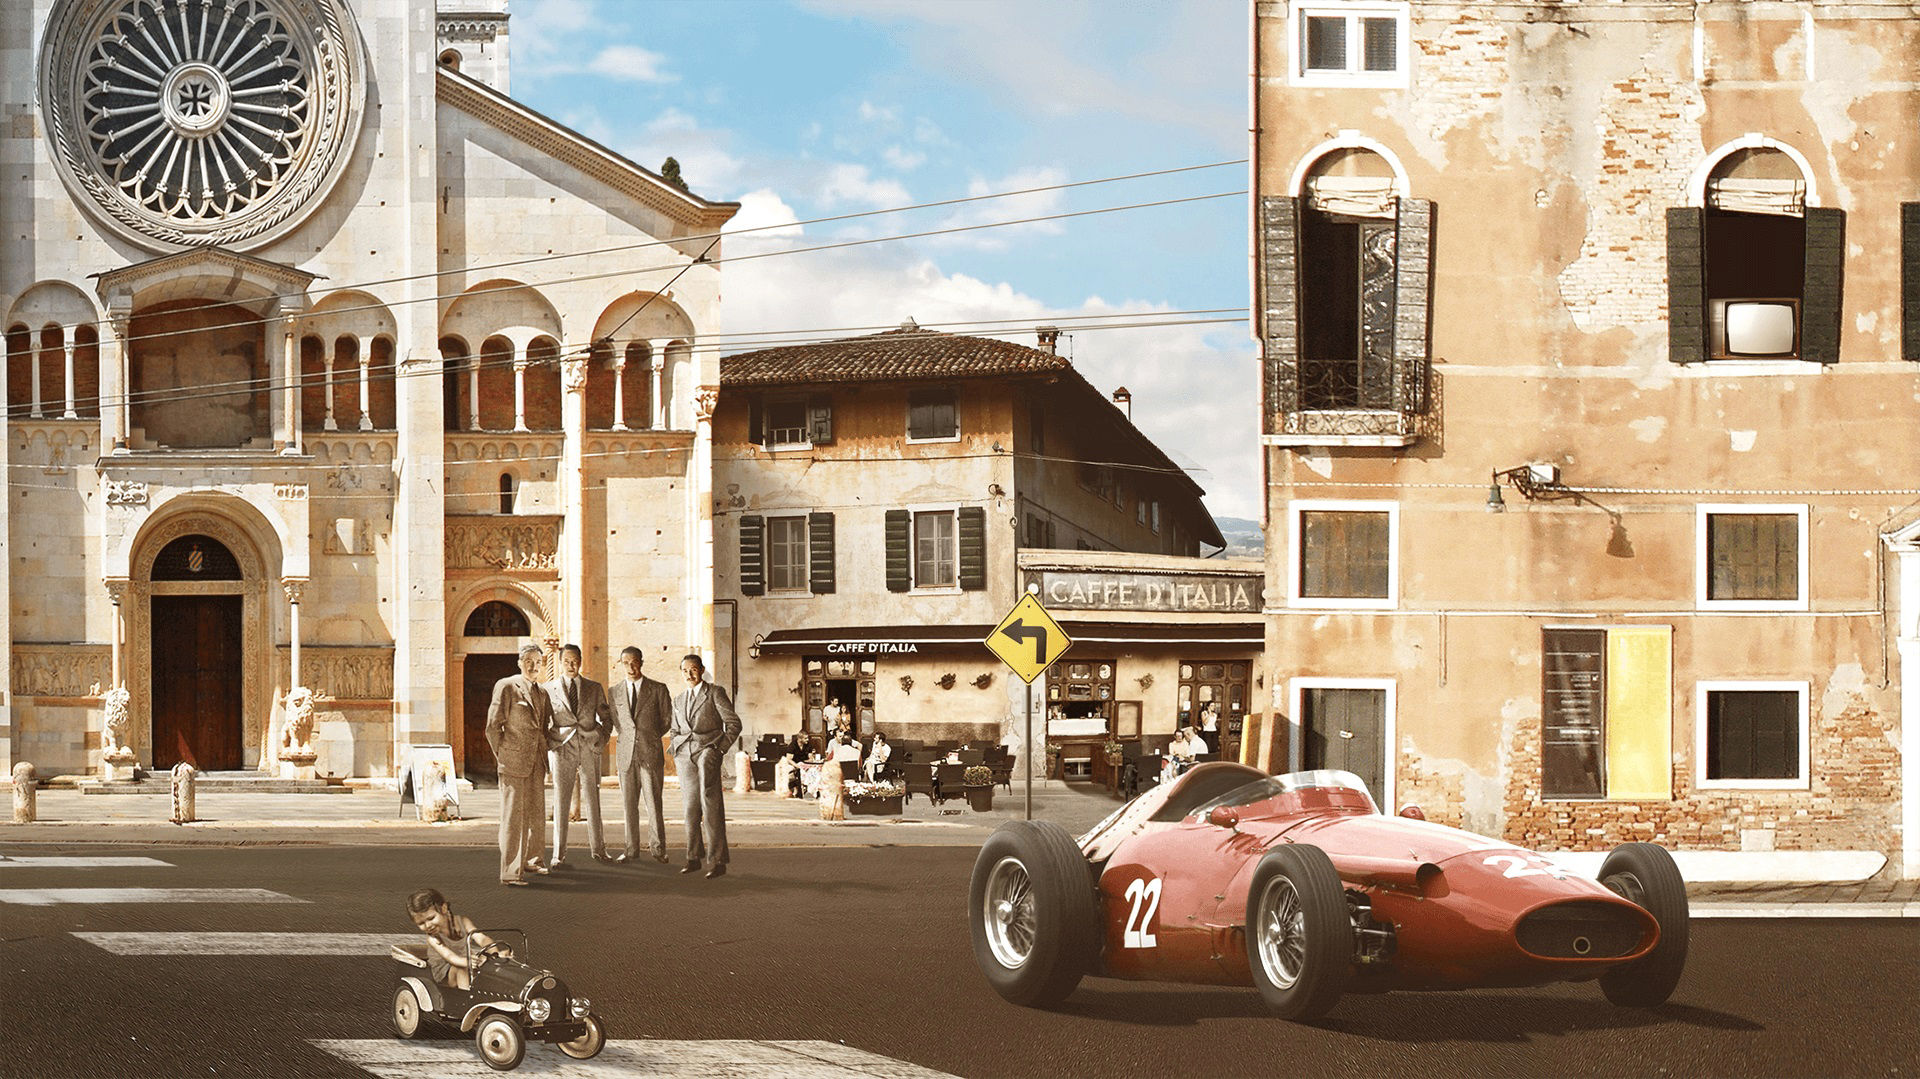 Storia di Maserati - 1950: Maserati 250 F in una città italiana